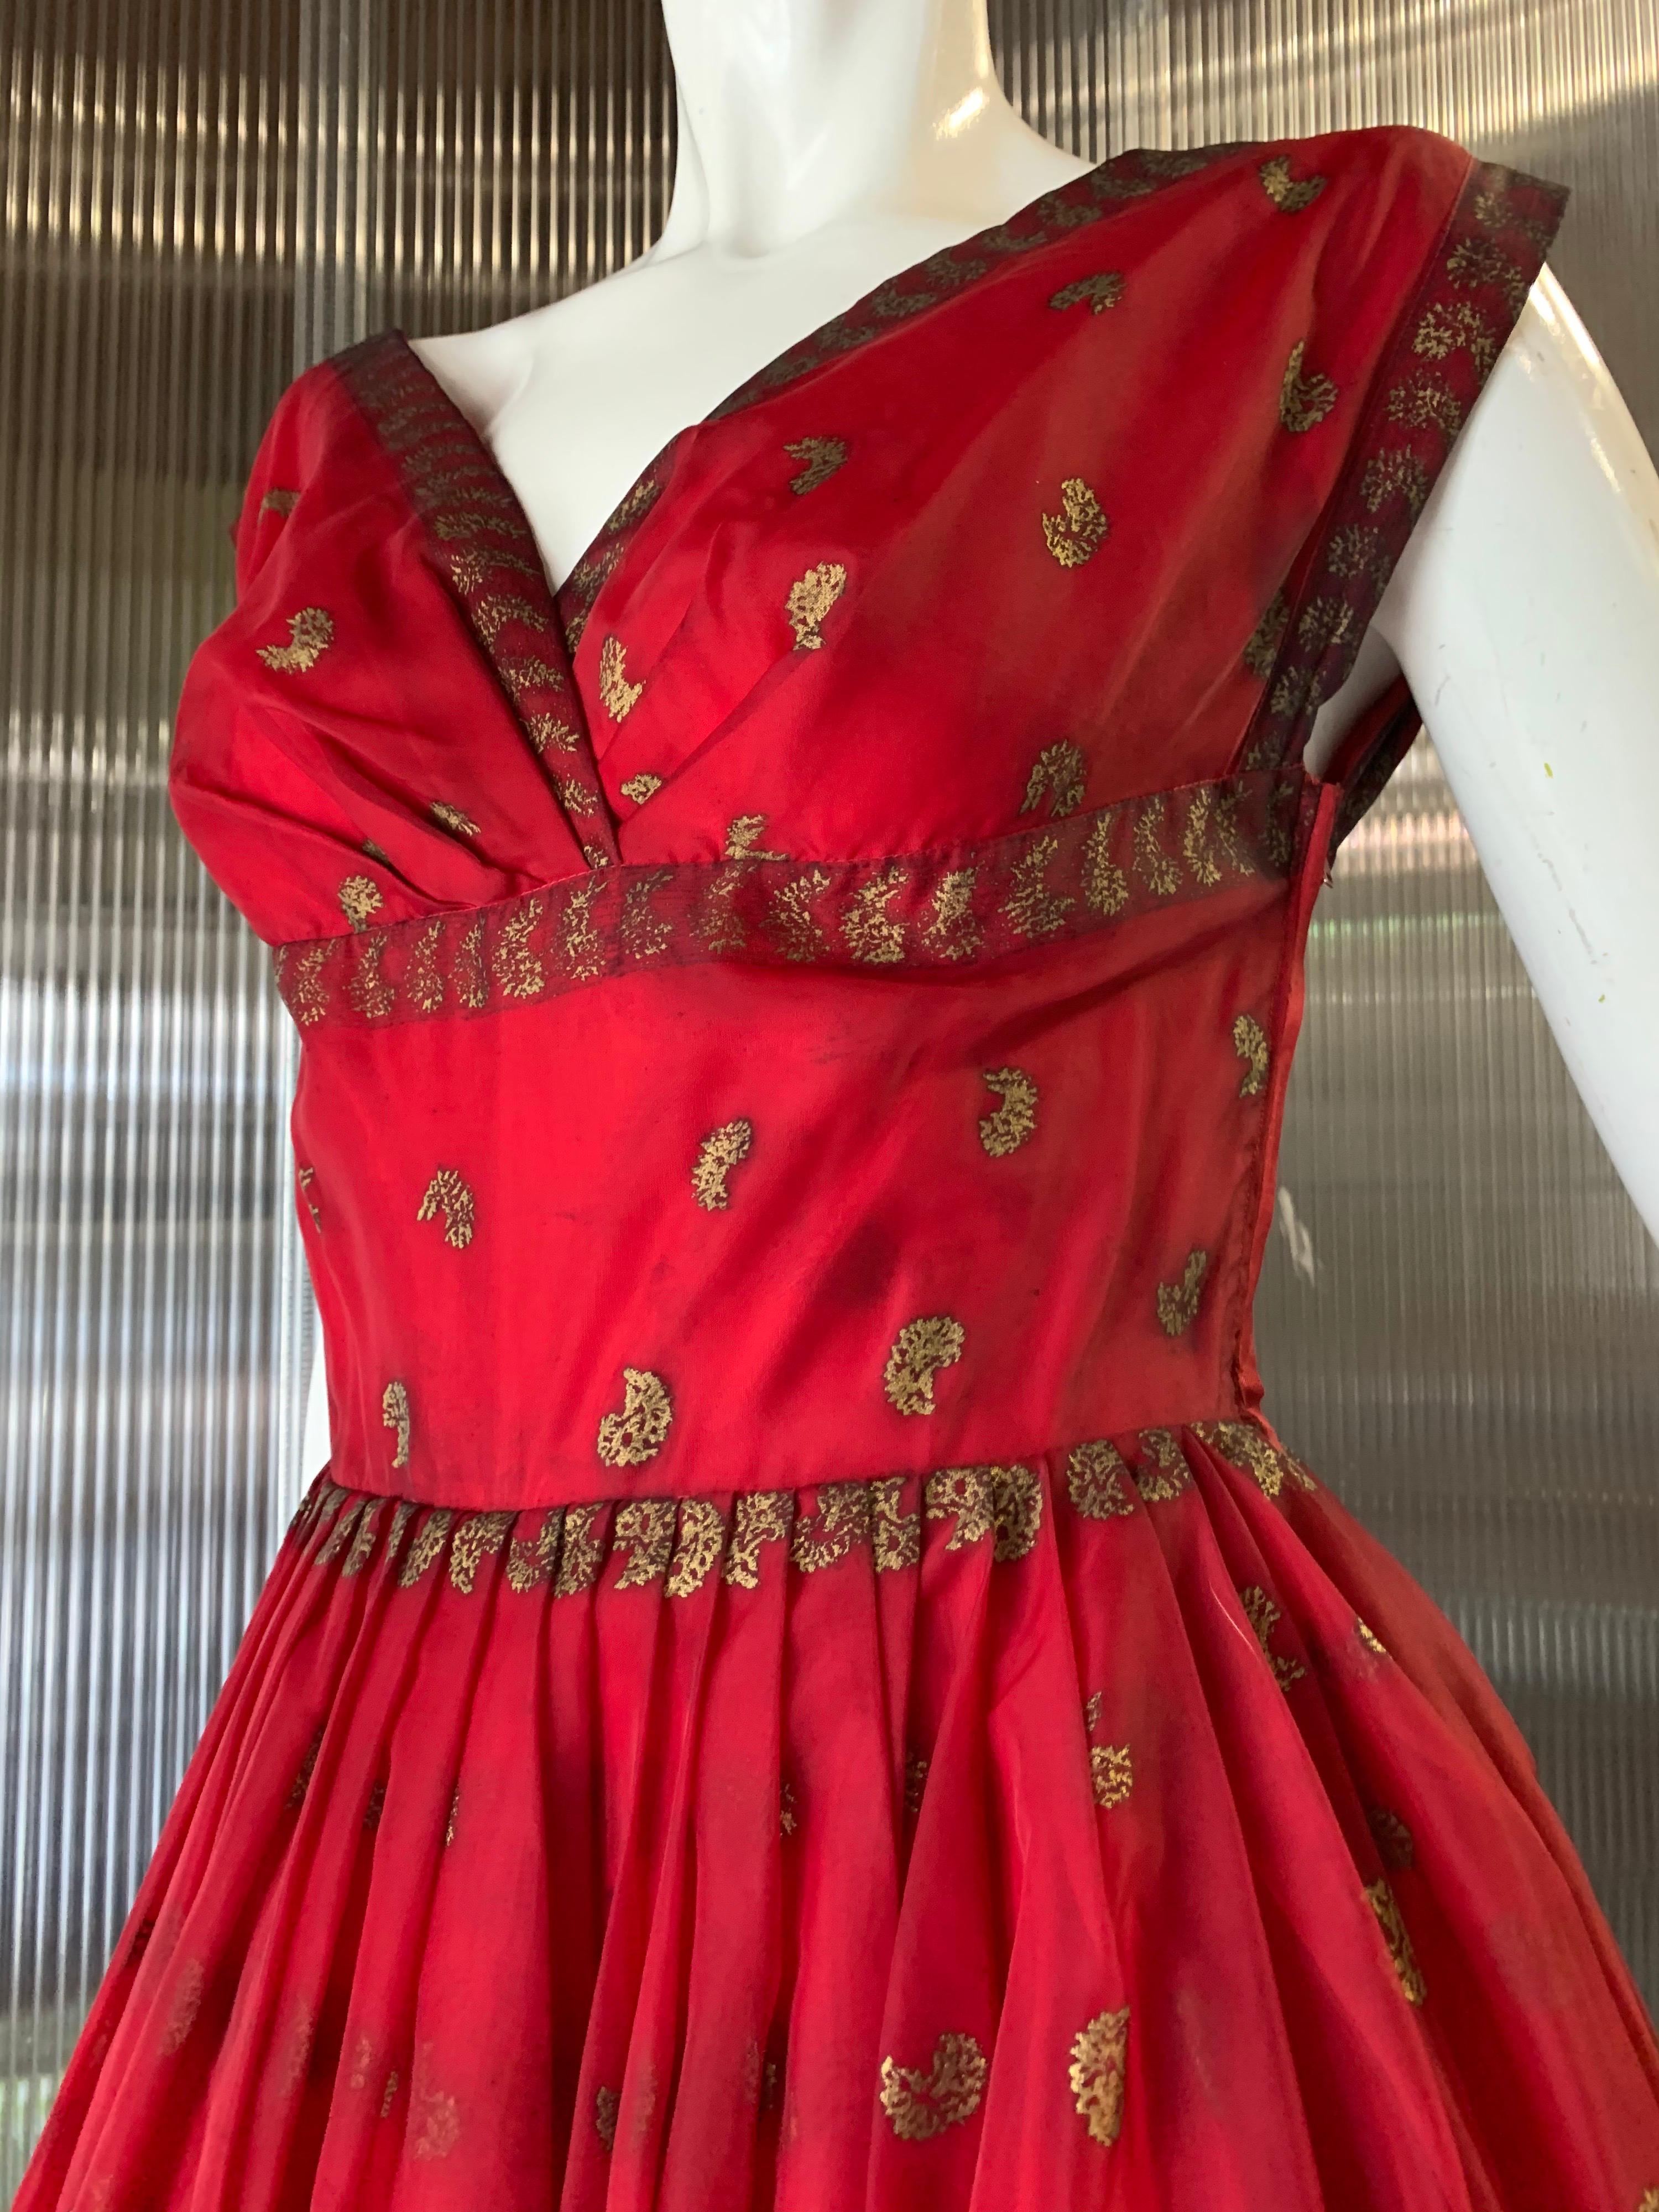 Robe de danse d'inspiration indienne de Fred, datant des années 1950, en organza de nylon cramoisi et motif cachemire métallique doré, avec deux épaisseurs de doublure. Corsage ajusté et jupe plissée. Fermeture éclair sur le côté. Convient à une